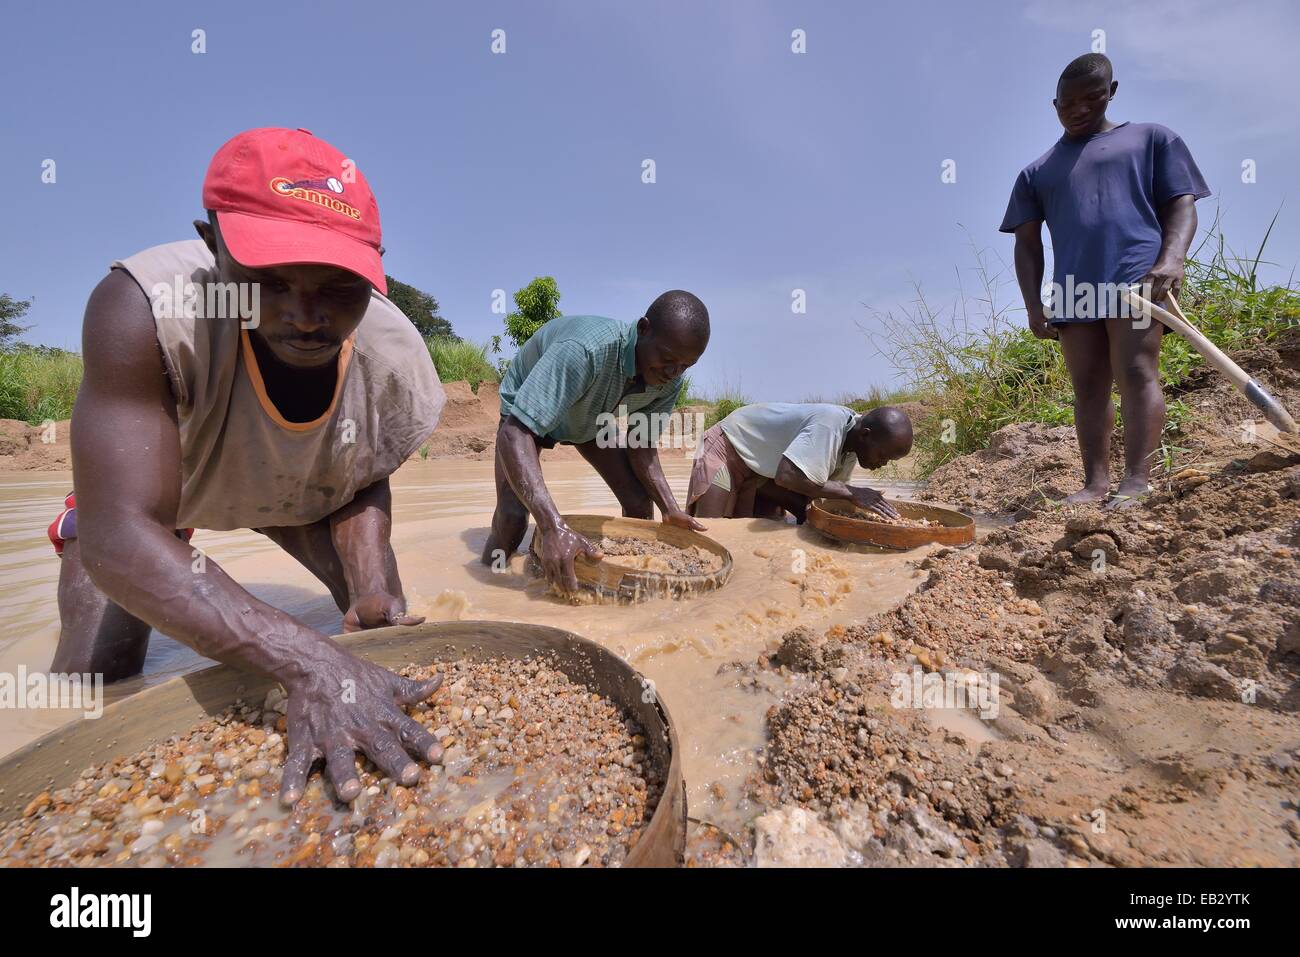 Les chasseurs de diamants à la recherche de diamants dans une mine avec tamis et pelles, près de Koidu, Koidu-Sefadu, district de Kono Banque D'Images